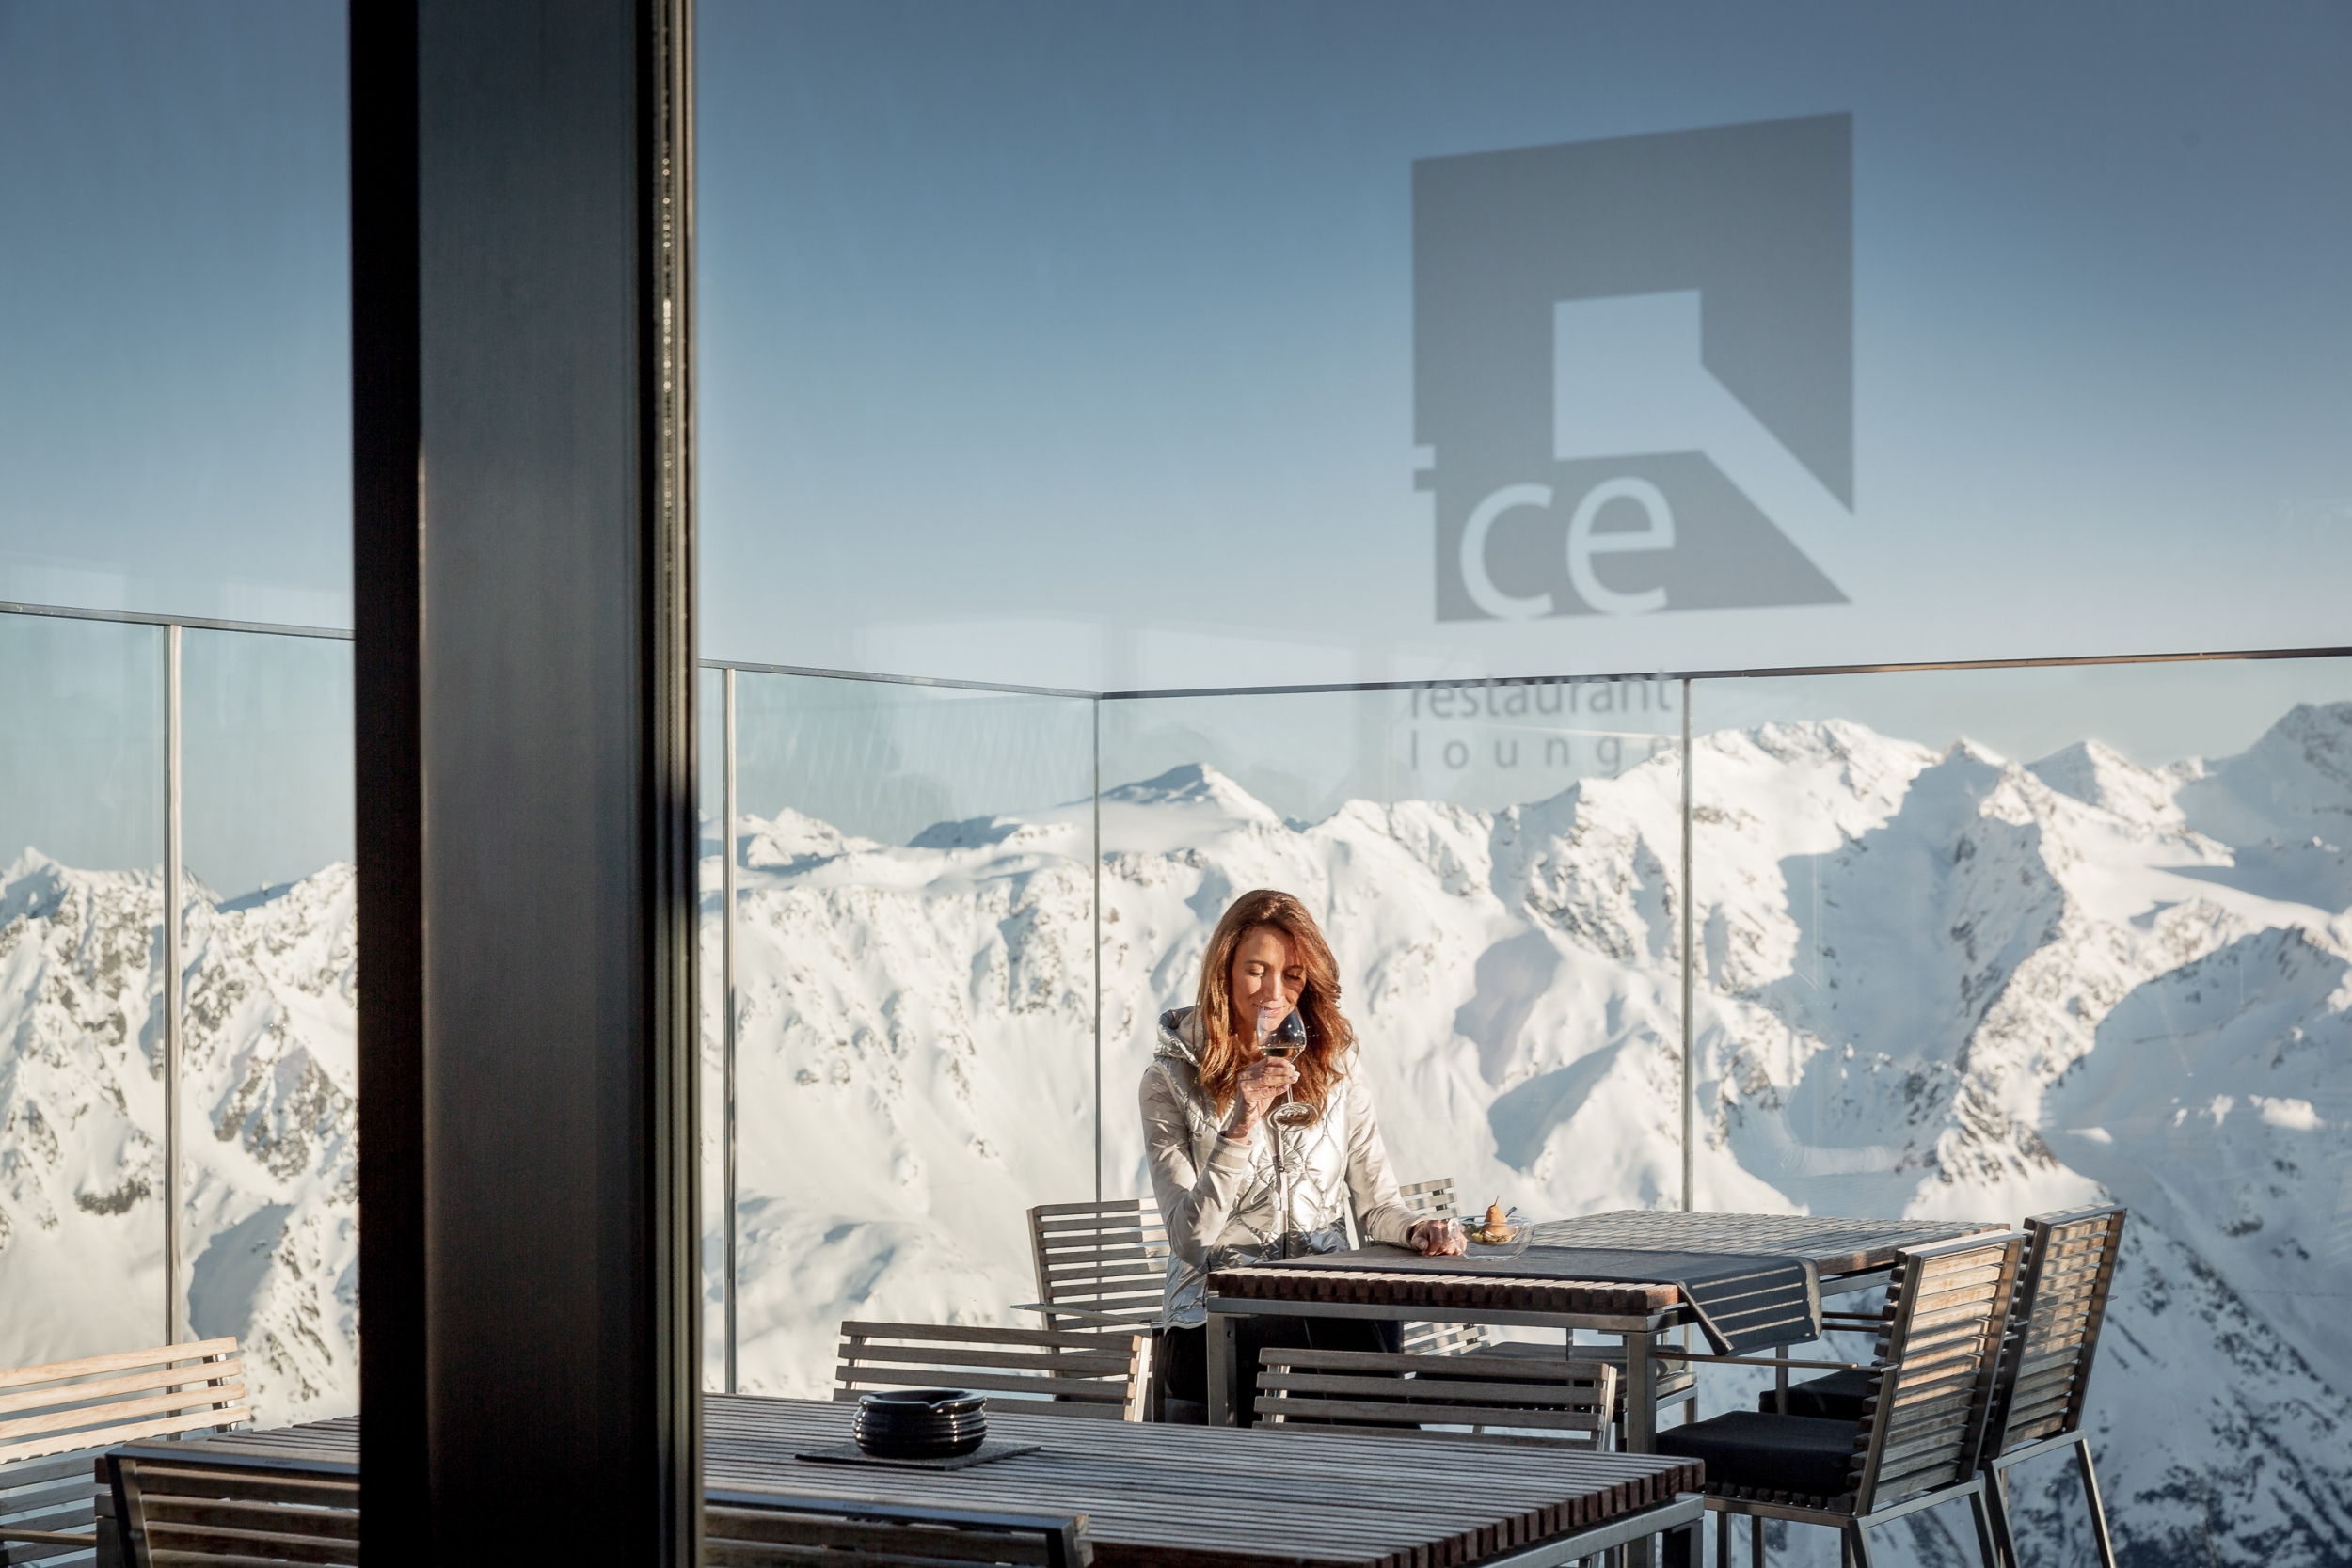 ice Q Lounge Terrasse am Gaislachkogl in Sölden